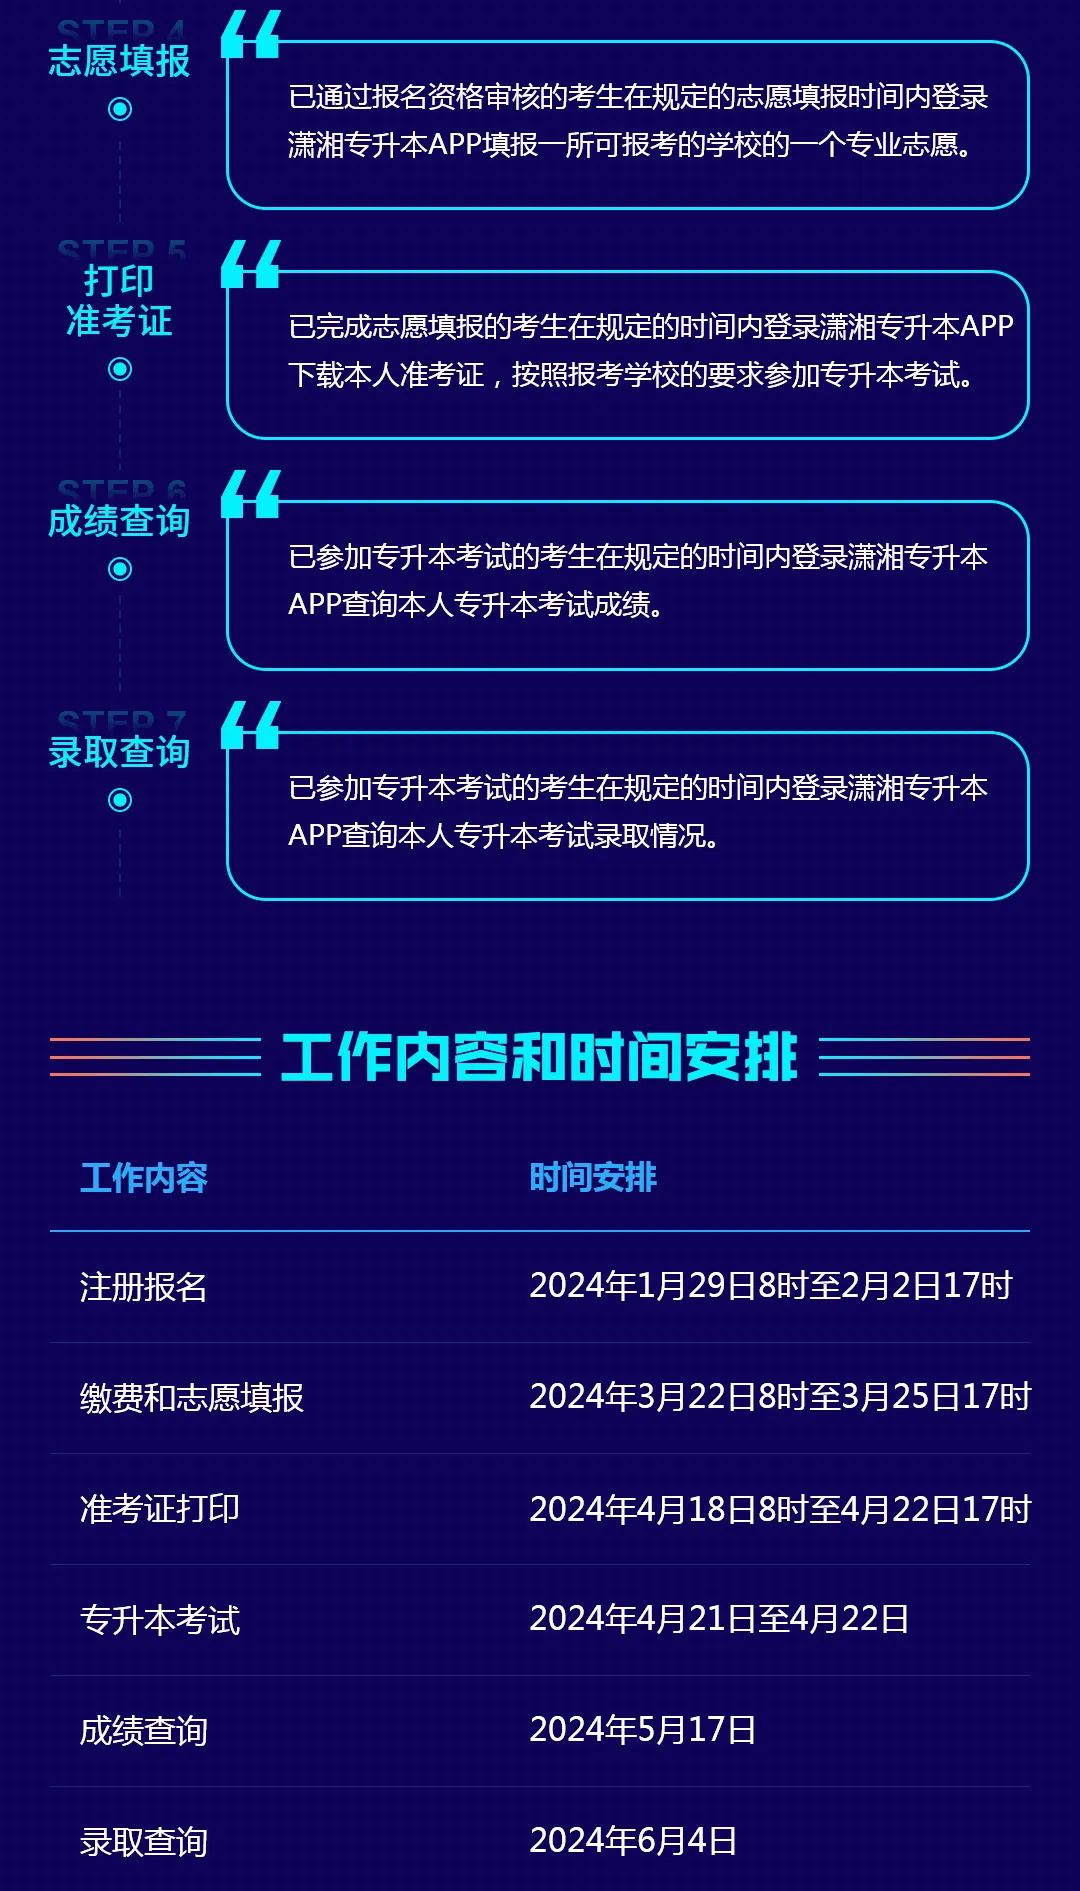 湖南省普通高等学校专升本信息管理平台系统操作指南(考生APP端)